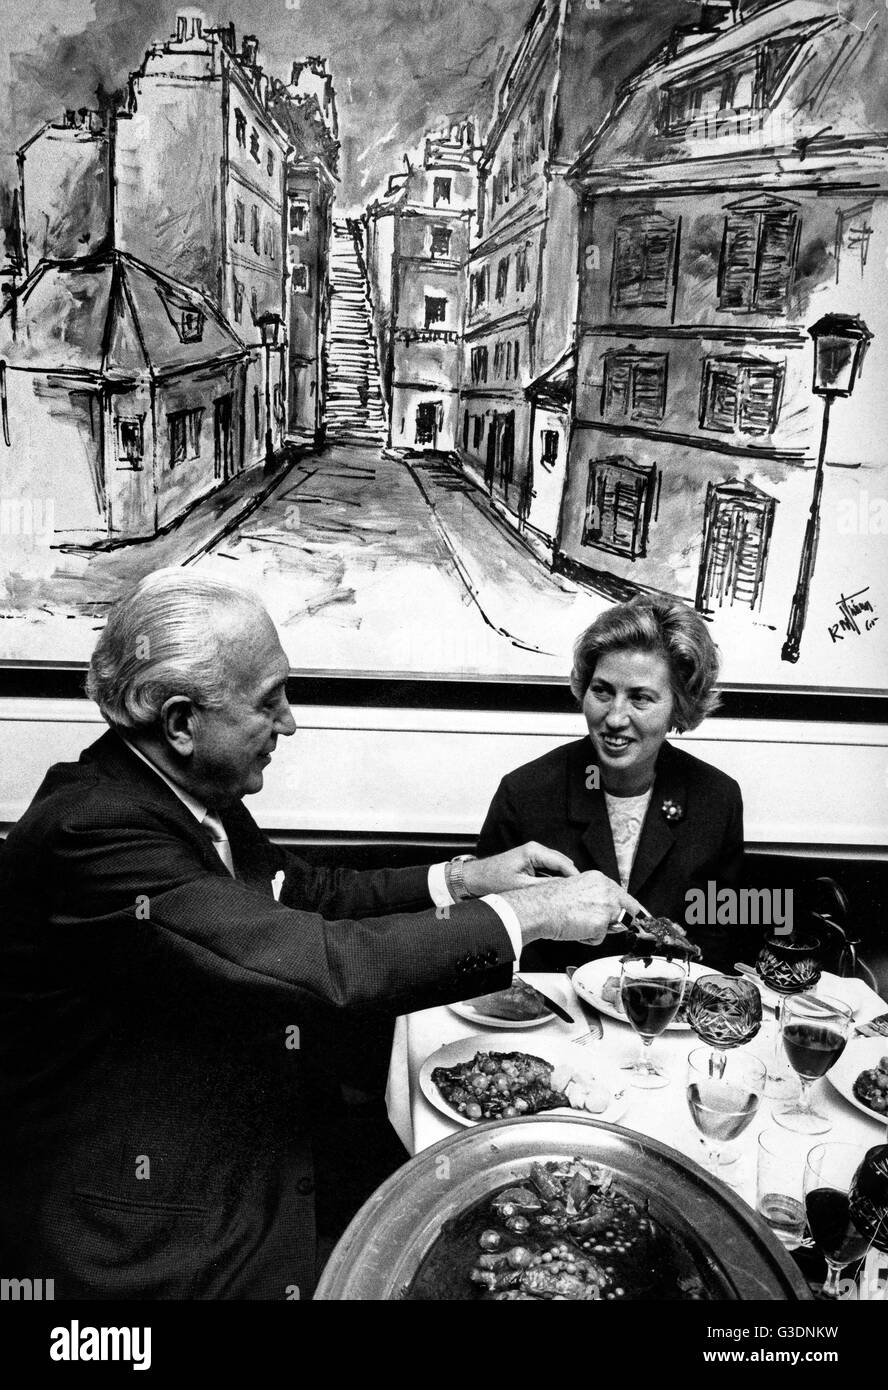 Hans Herbert Blatzheim im Restaurant, Deutschland 1960er Jahre. Foto Stock